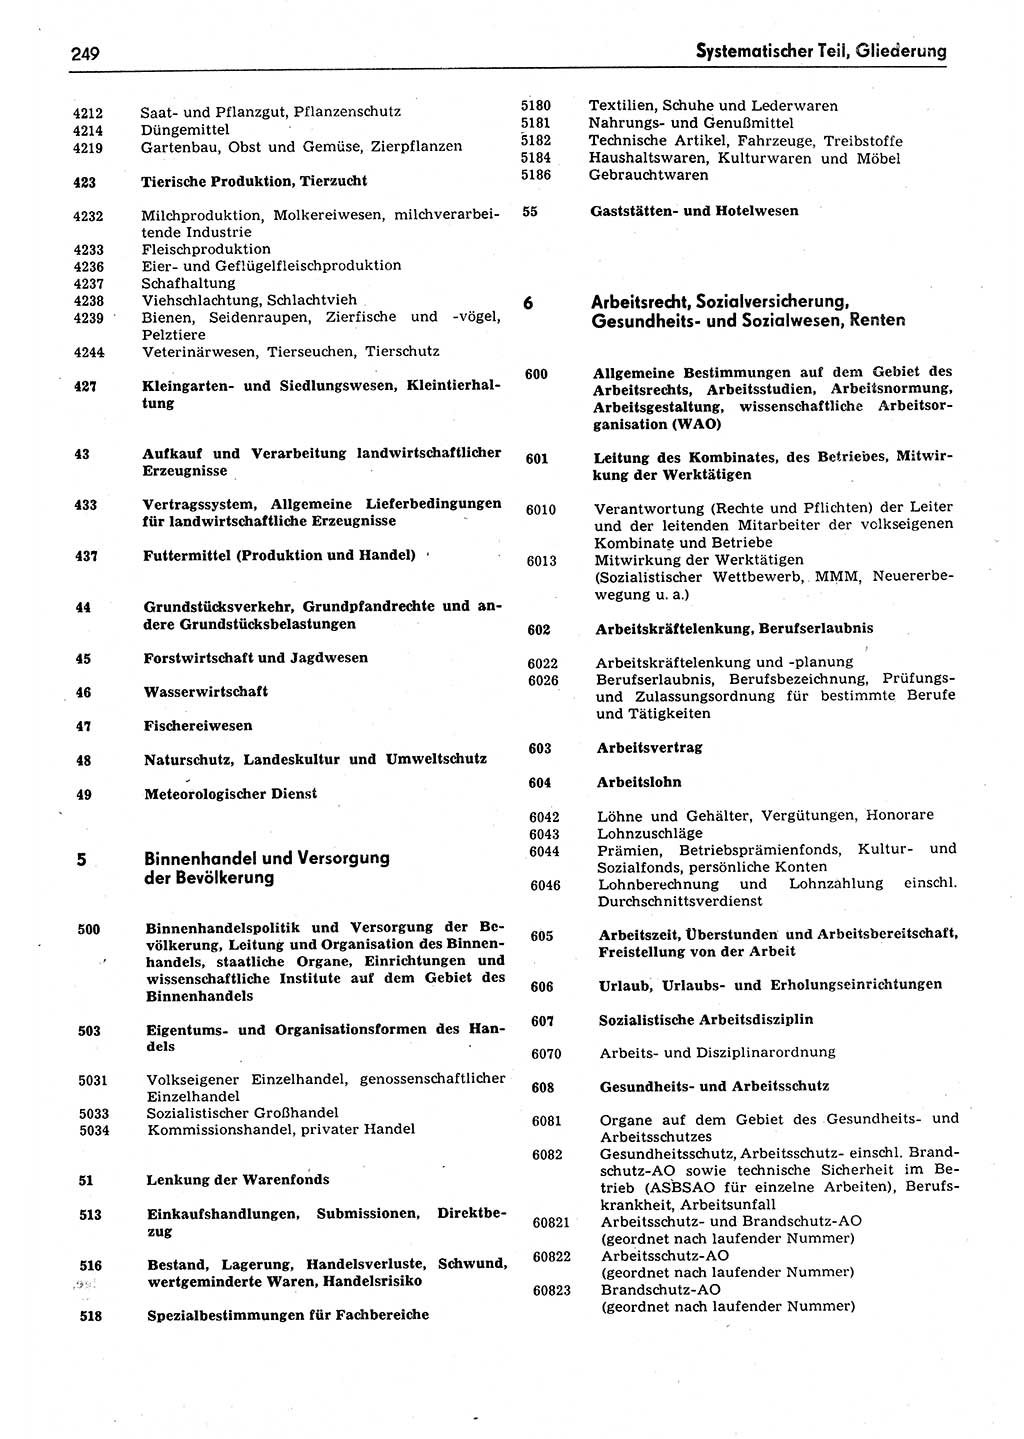 Das geltende Recht der Deutschen Demokratischen Republik (DDR) 1949-1988, Seite 249 (Gelt. R. DDR 1949-1988, S. 249)